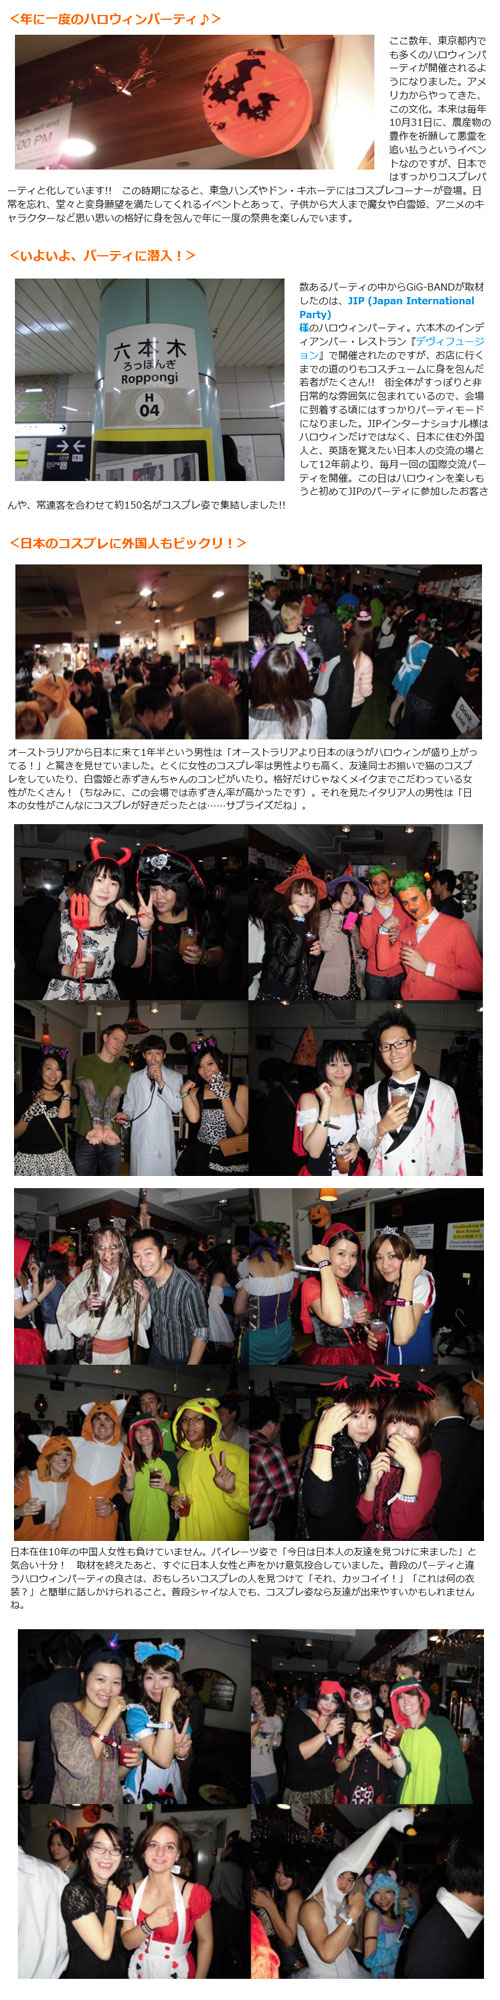 東京国際交流ハロウィンパーティー2013